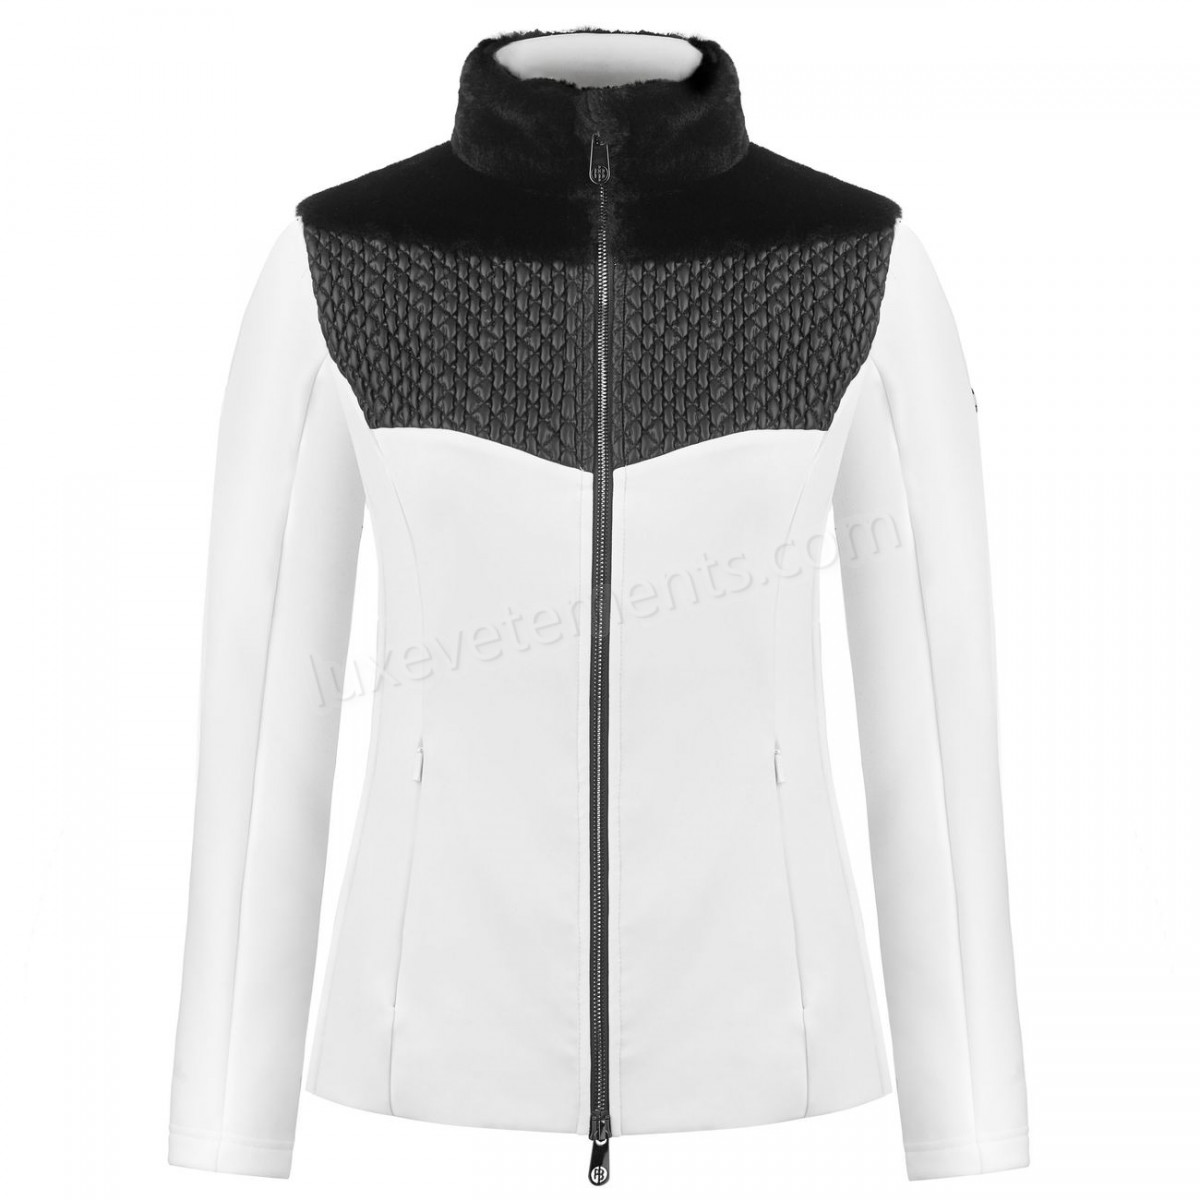 Poivre Blanc-Sports d'hiver femme POIVRE BLANC Veste En Polaire Poivre Blanc Hybrid Stretch Fleece Jacket 1600 Multico White Femme Vente en ligne - -3